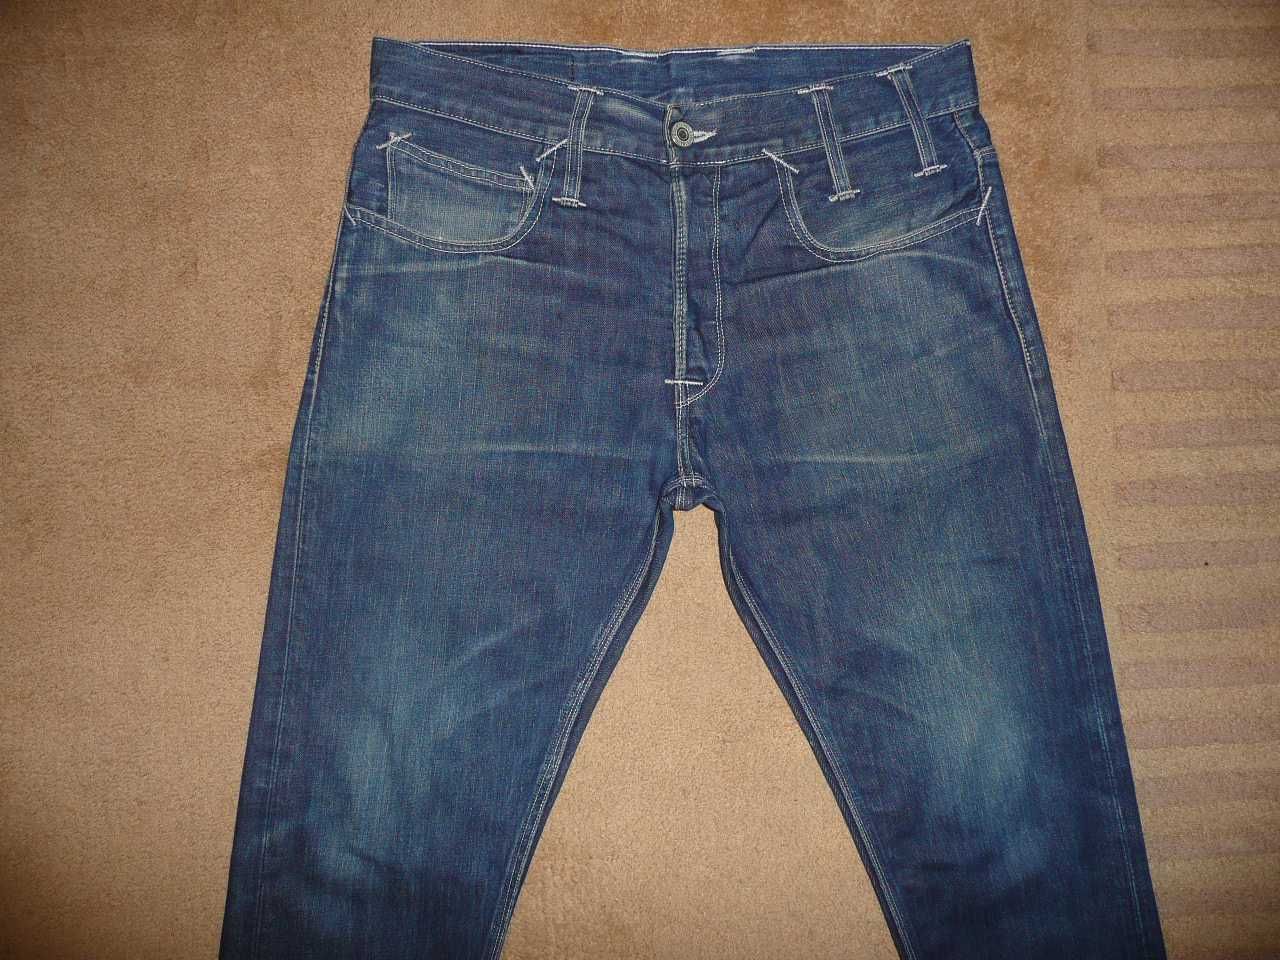 Spodnie dżinsy LEVIS 606 W32/L32=44/106cm jeansy